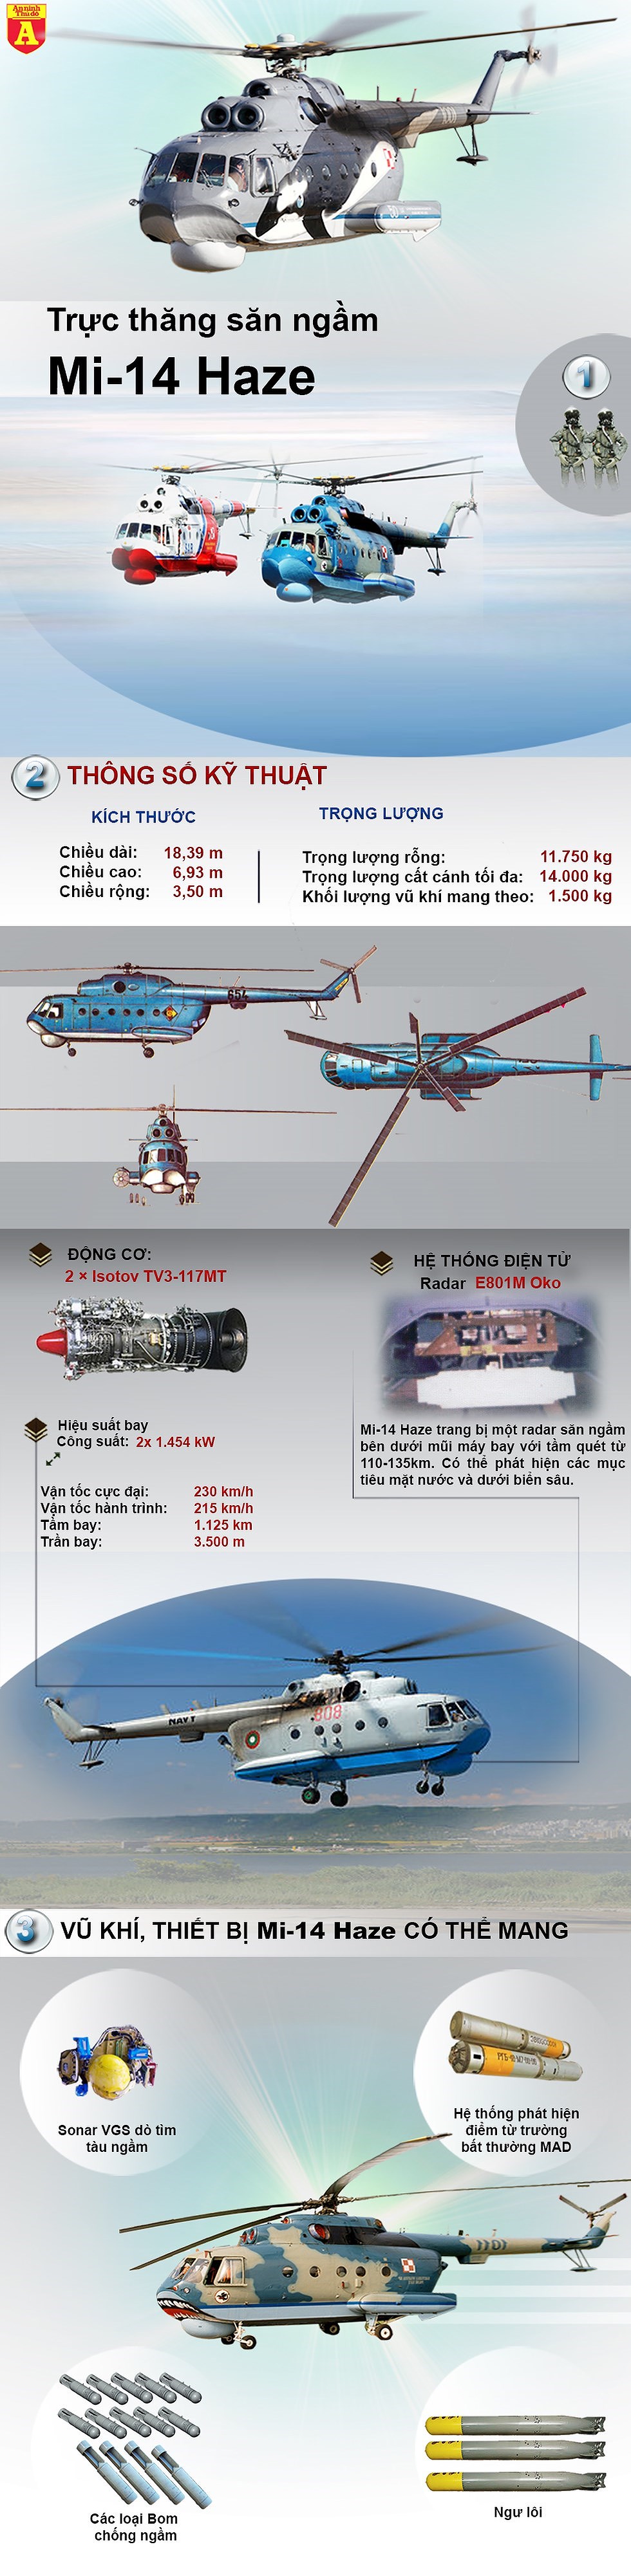 [Infographic] Quốc gia nào khối NATO có trực thăng săn ngầm mang vũ khí hạt nhân của Liên Xô - Ảnh 1